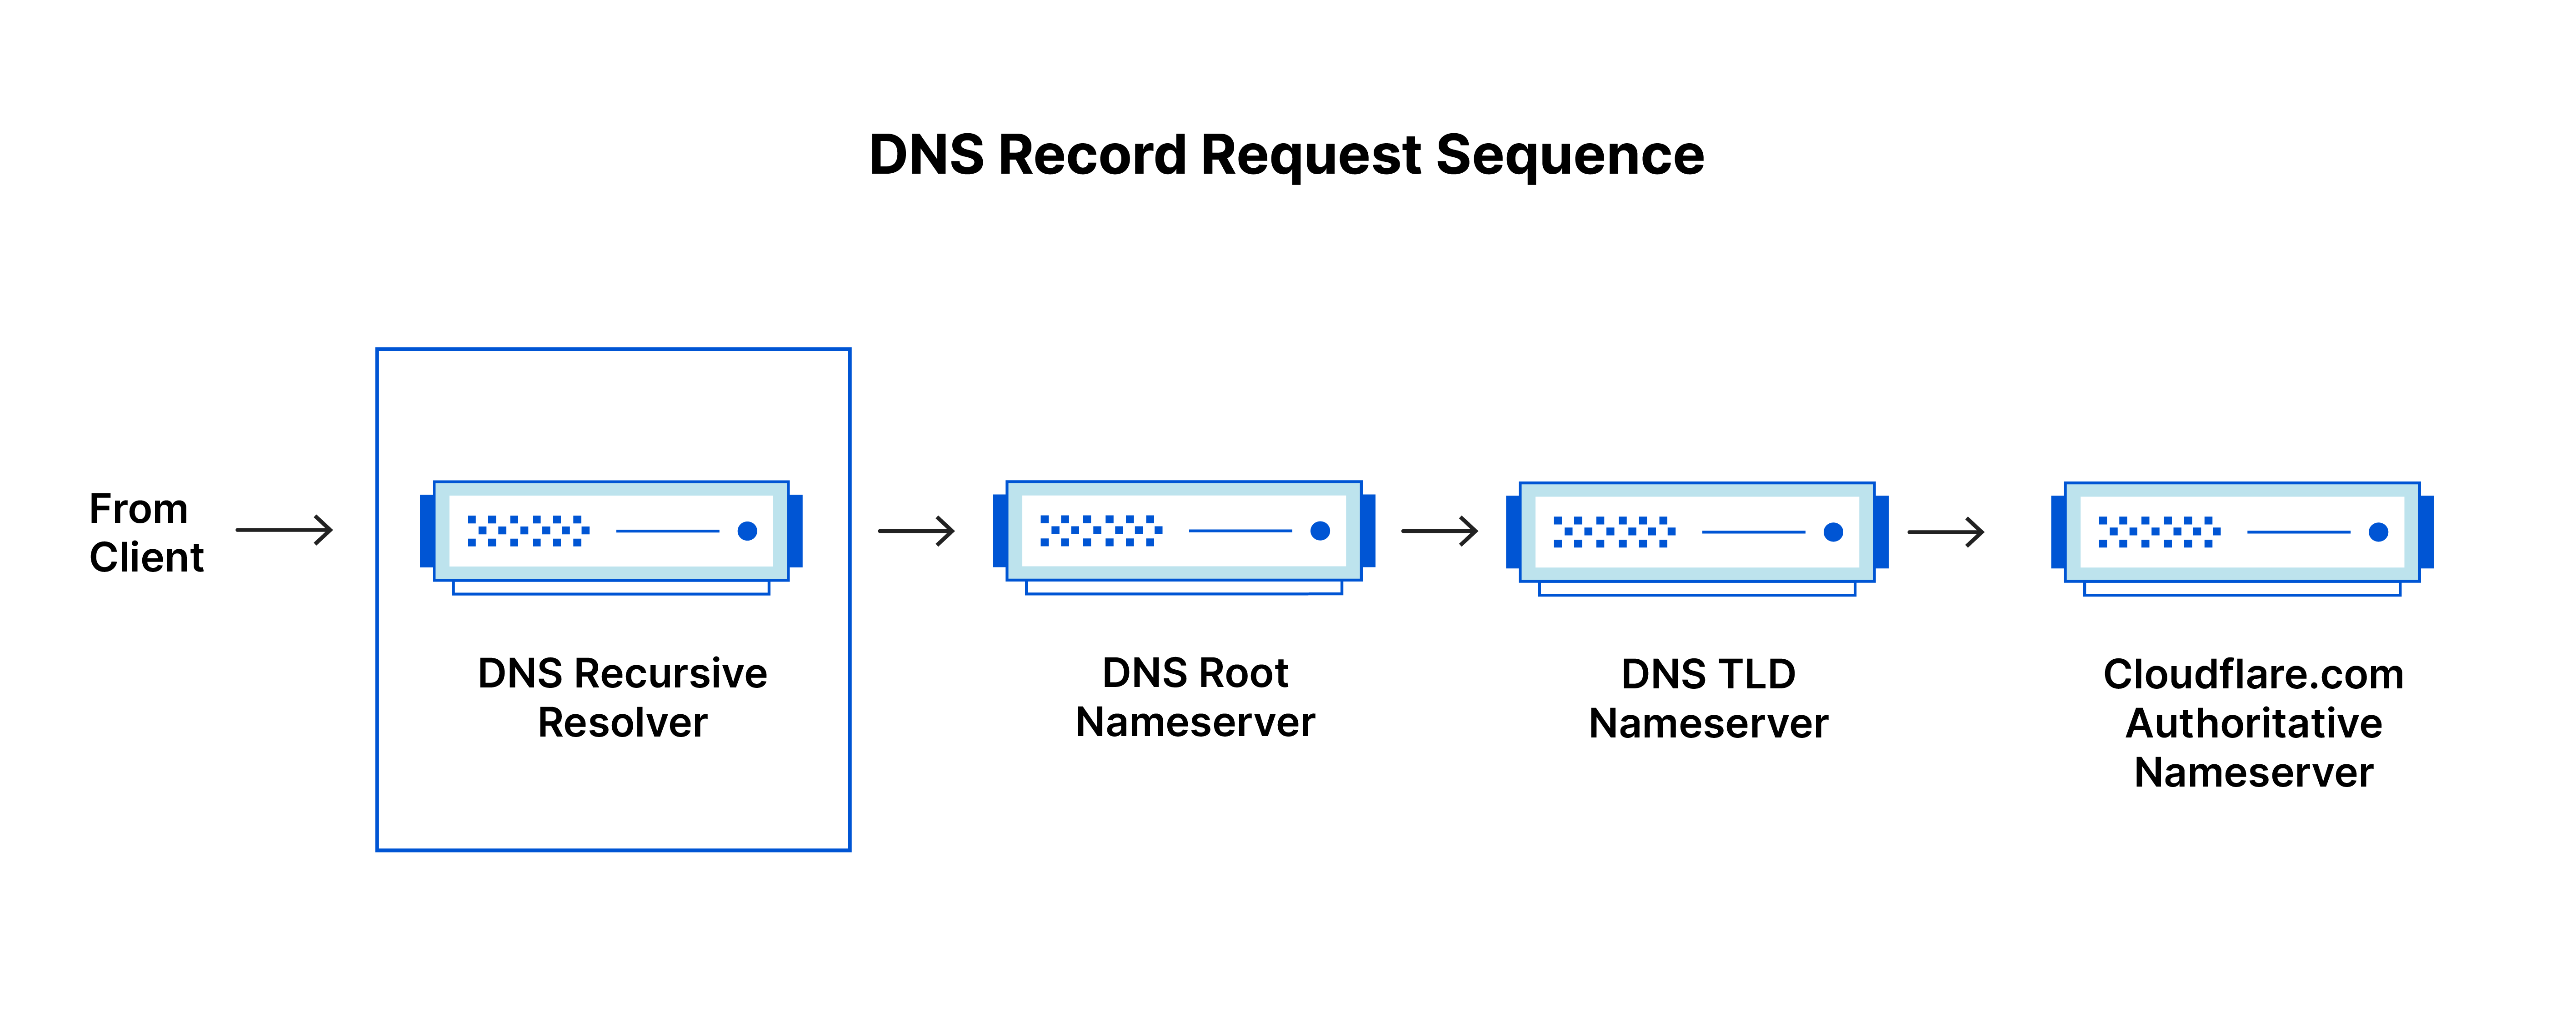 Sequenz der DNS-Eintragsanfragen – DNS Recursive Resolver erhält Anfrage vom Client